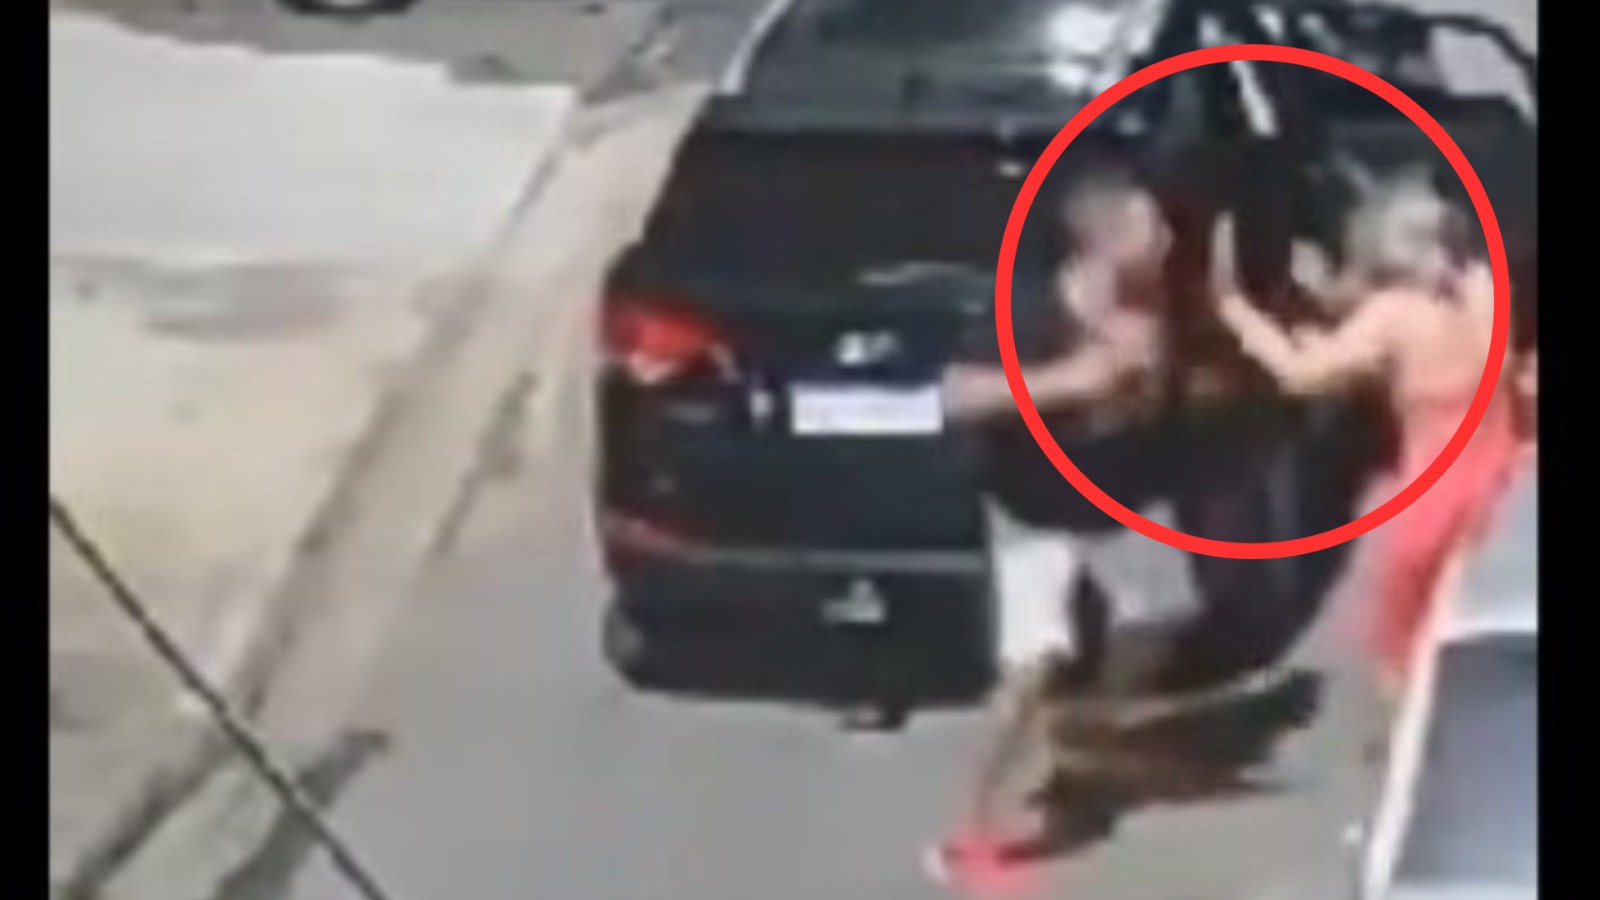 [VIDEO SENSIBLE] Militar mata a balazos a su esposa en plena calle: Brasil